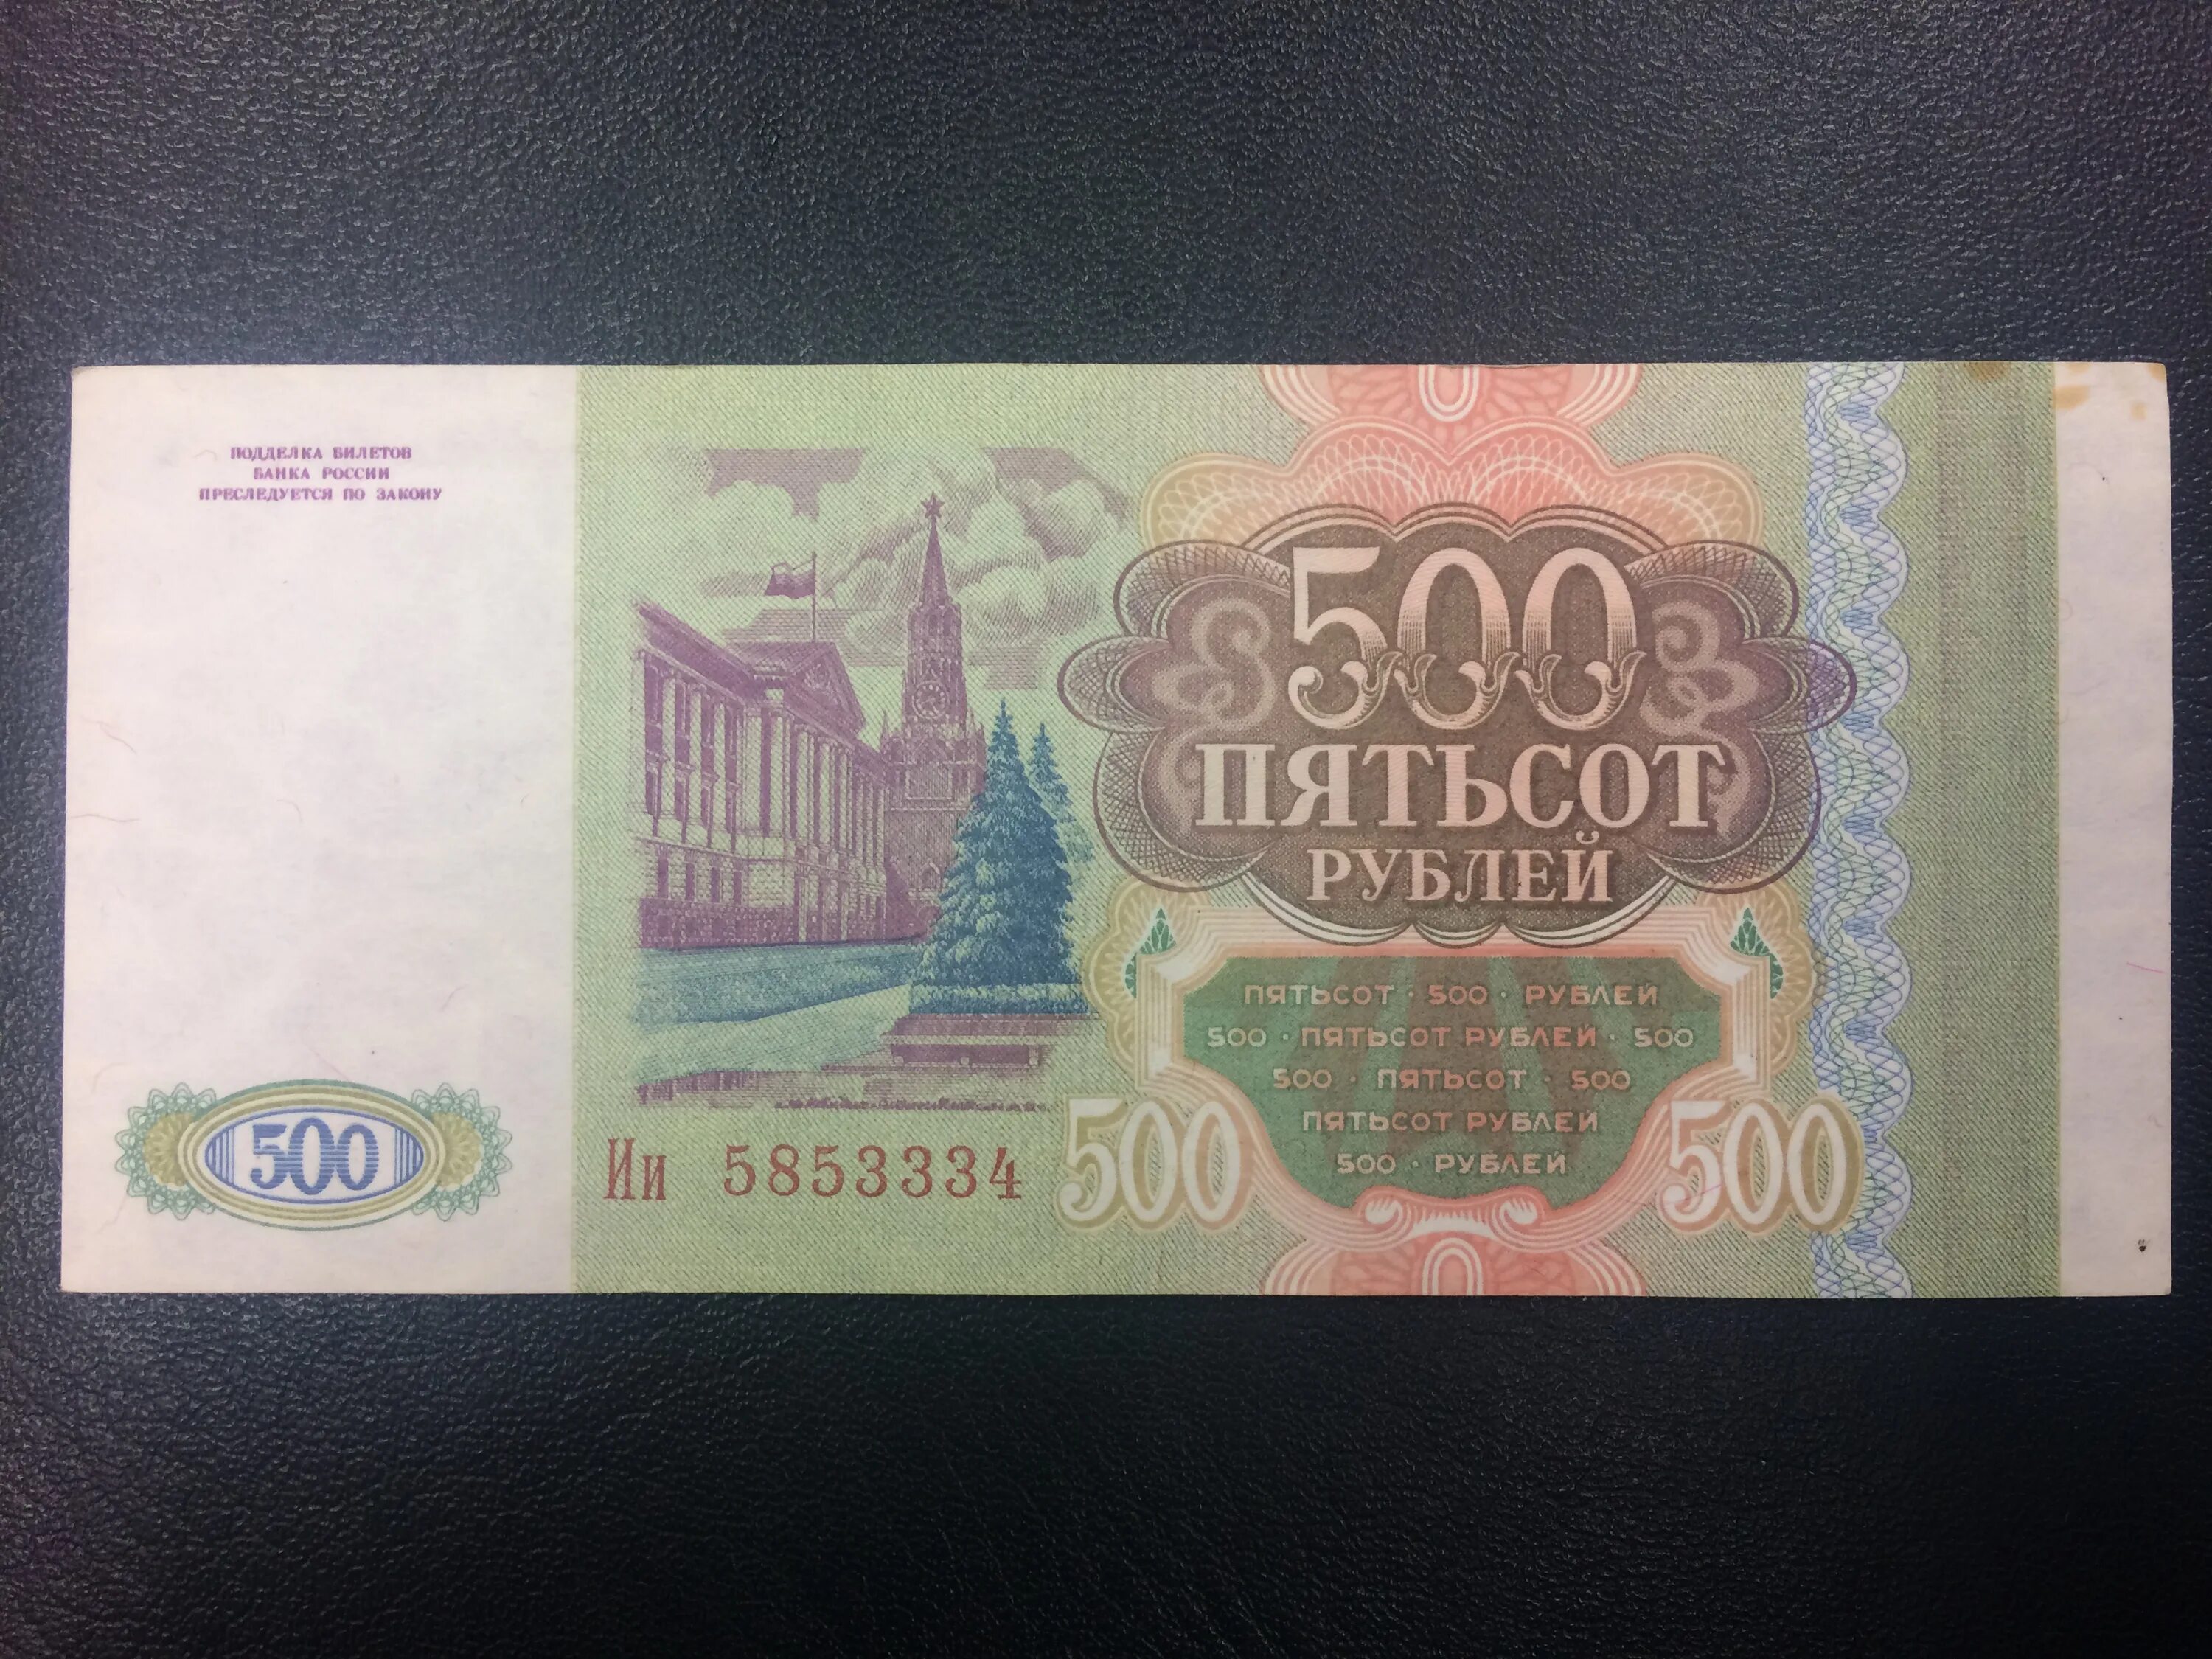 500 рублей россии в долларах. 500 Рублей 1993. Купюра 500 рублей 1993 года. Пятьсот рублей 1993 года. Купюра 500 рублей 1993.